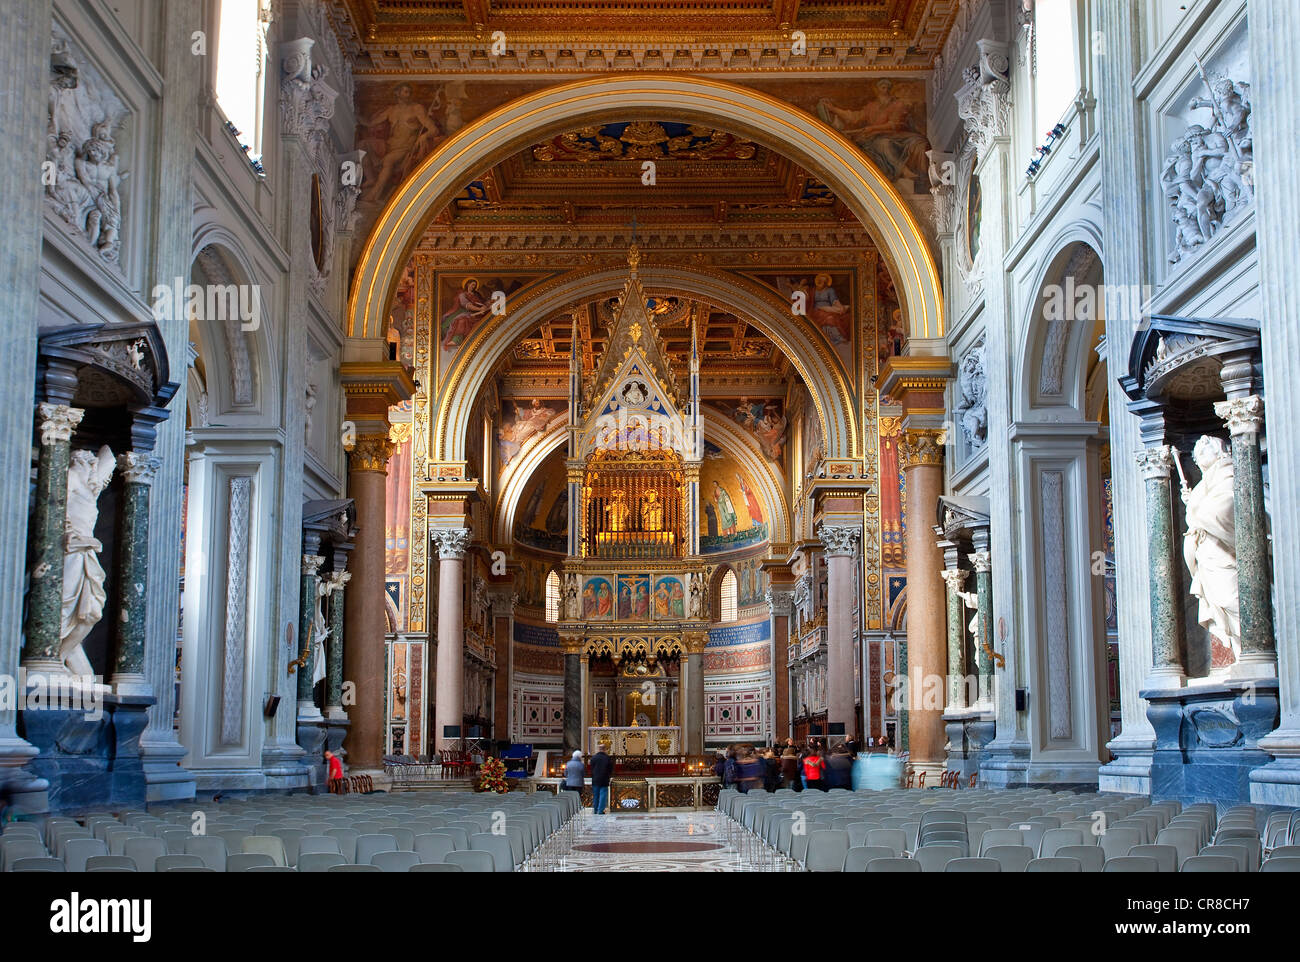 Italy, Lazio, Rome, historical center UNESCO World Heritage, San Giovanni Laterano basilica Stock Photo